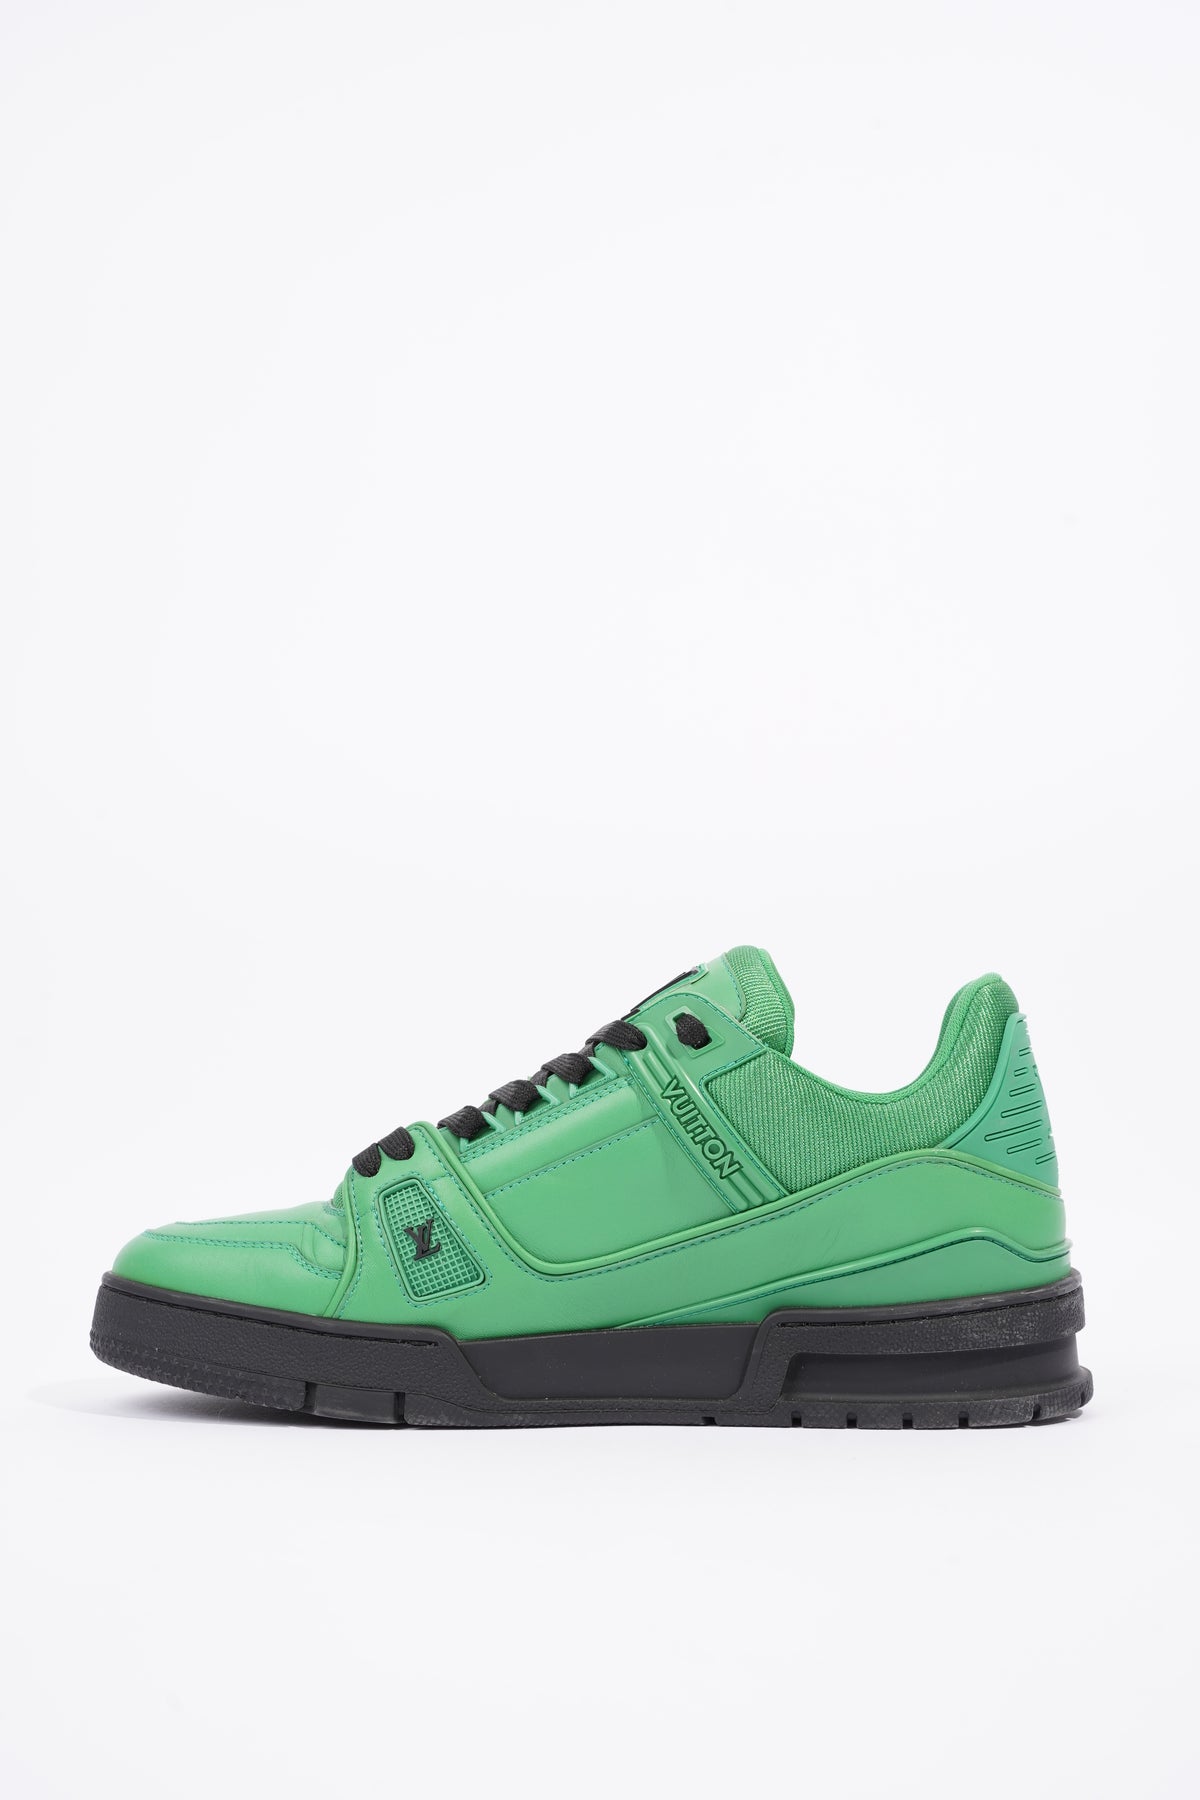 Louis Vuitton Mens Virgil Abloh Sneaker Green / Black EU 41 / UK 7